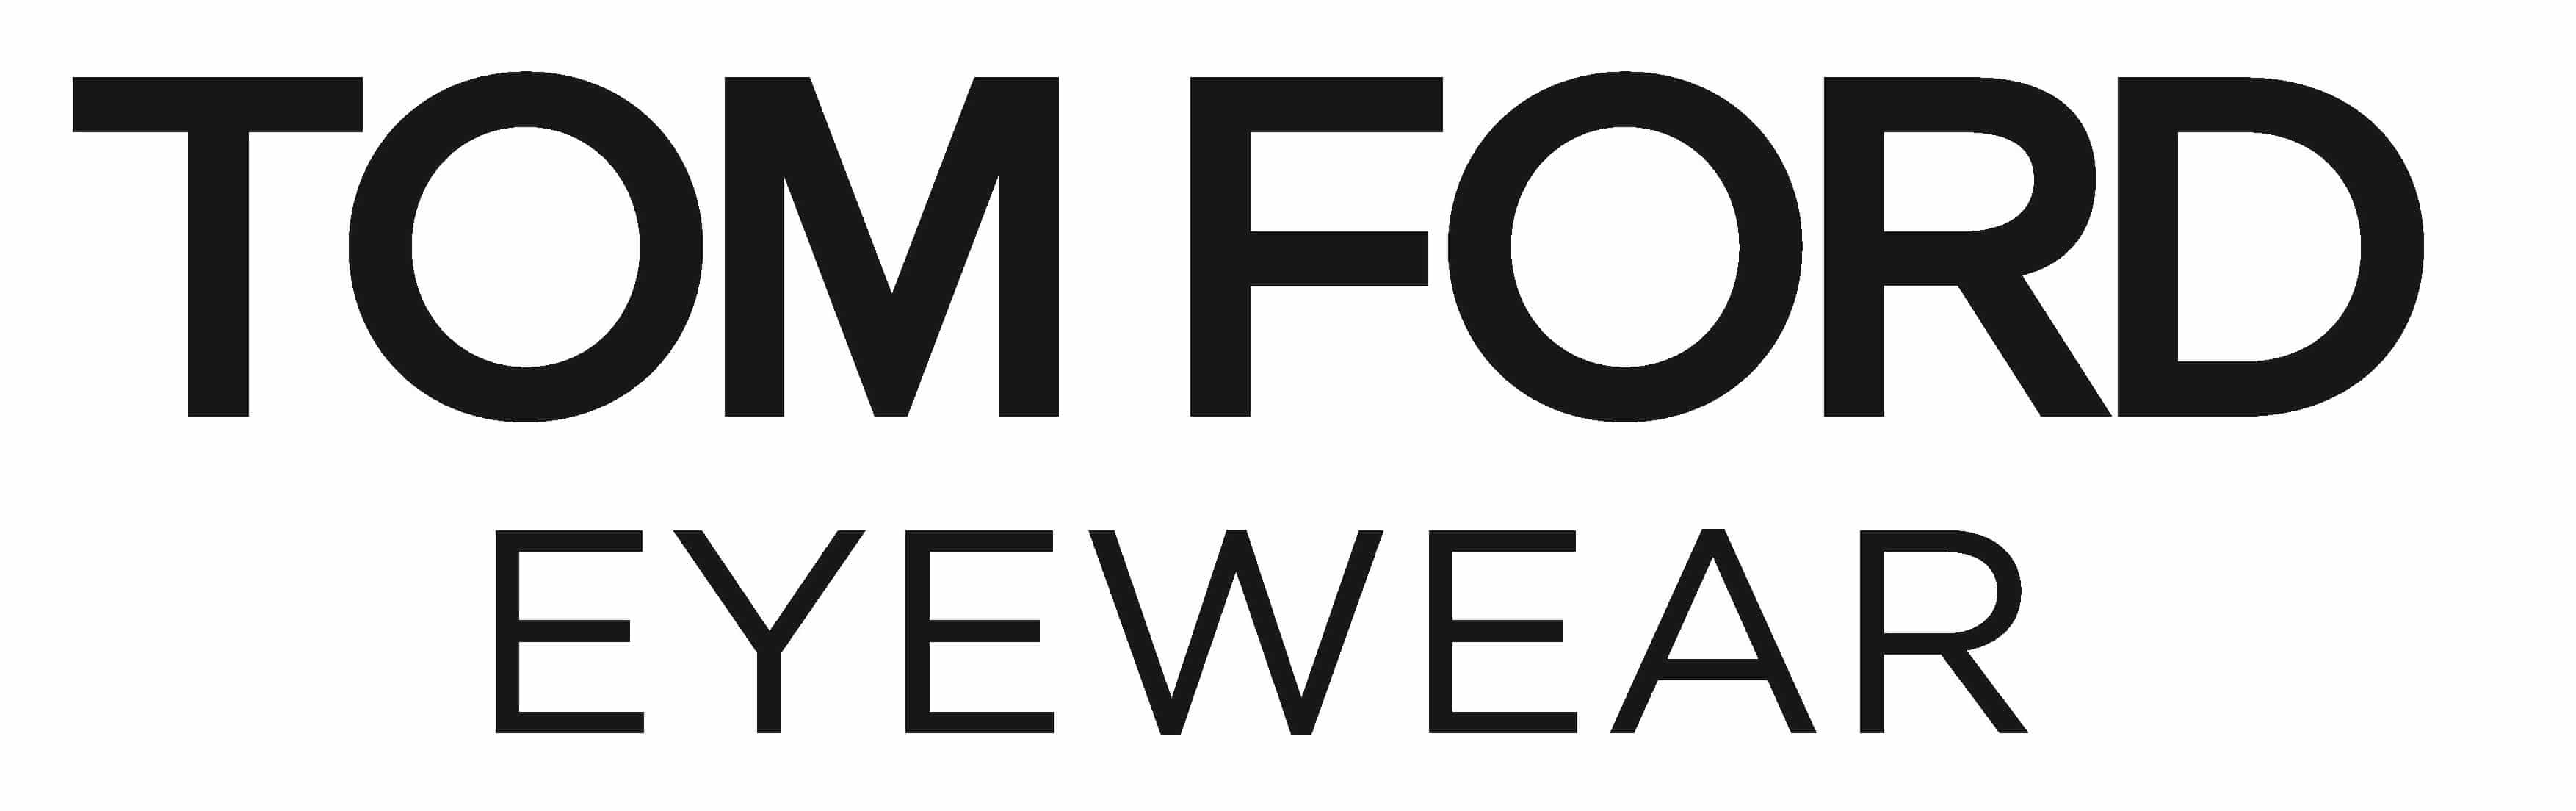 Tom Ford Logo - Tom Ford Logo